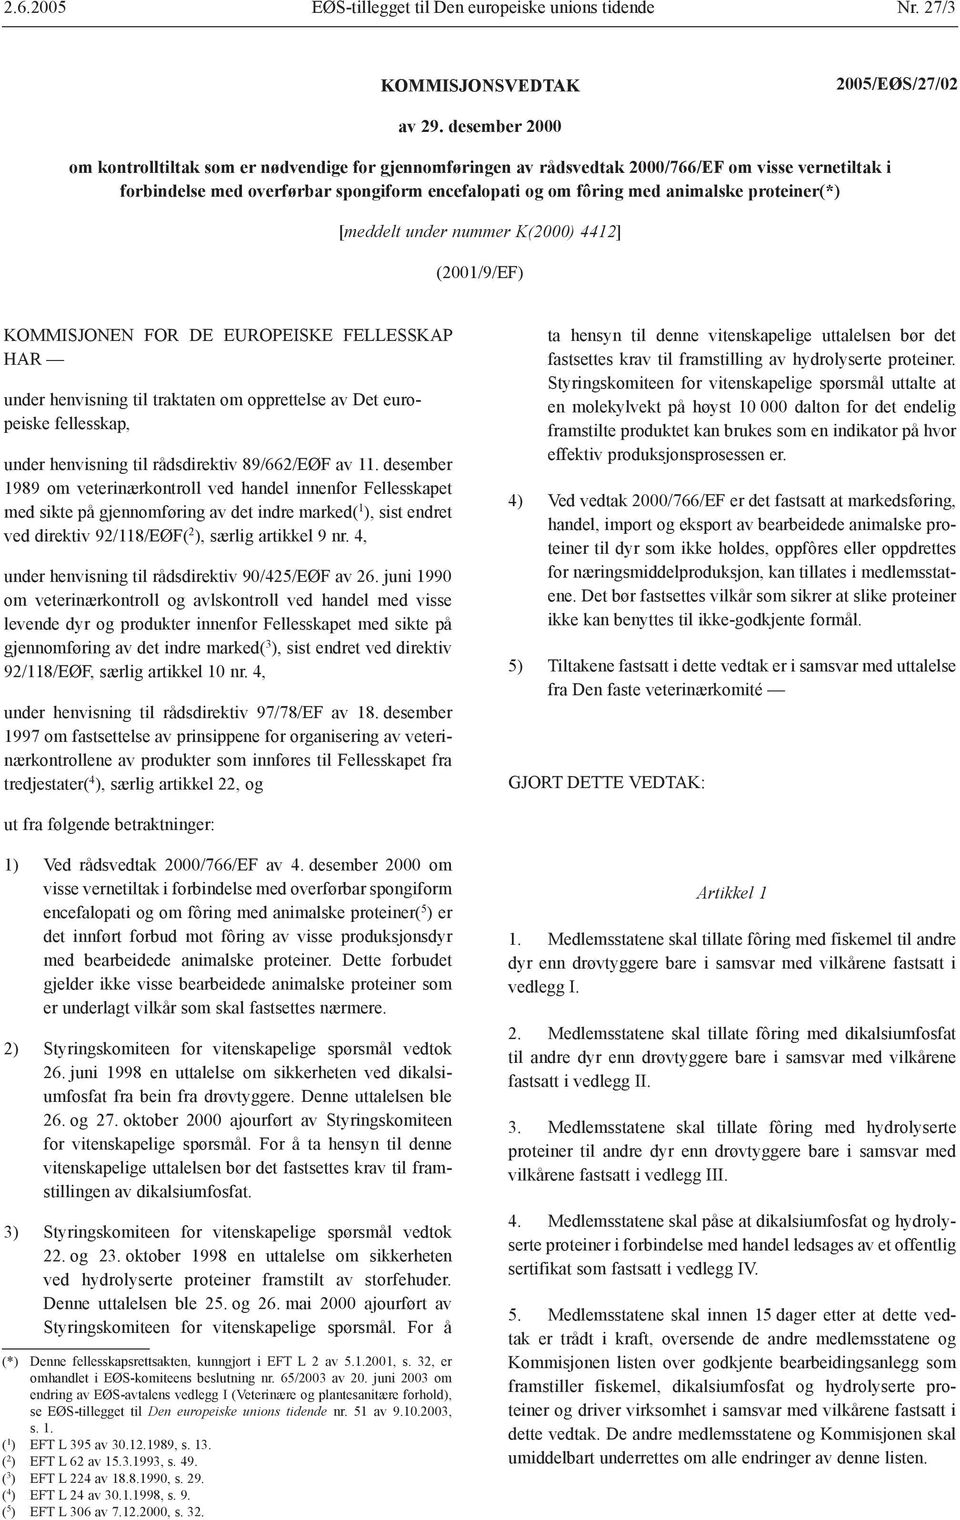 proteiner(*) [meddelt under nummer K(2000) 4412] (2001/9/EF) KOMMISJOE FOR DE EUROPEISKE FELLESSKAP HAR under henvisning til traktaten om opprettelse av Det europeiske fellesskap, under henvisning